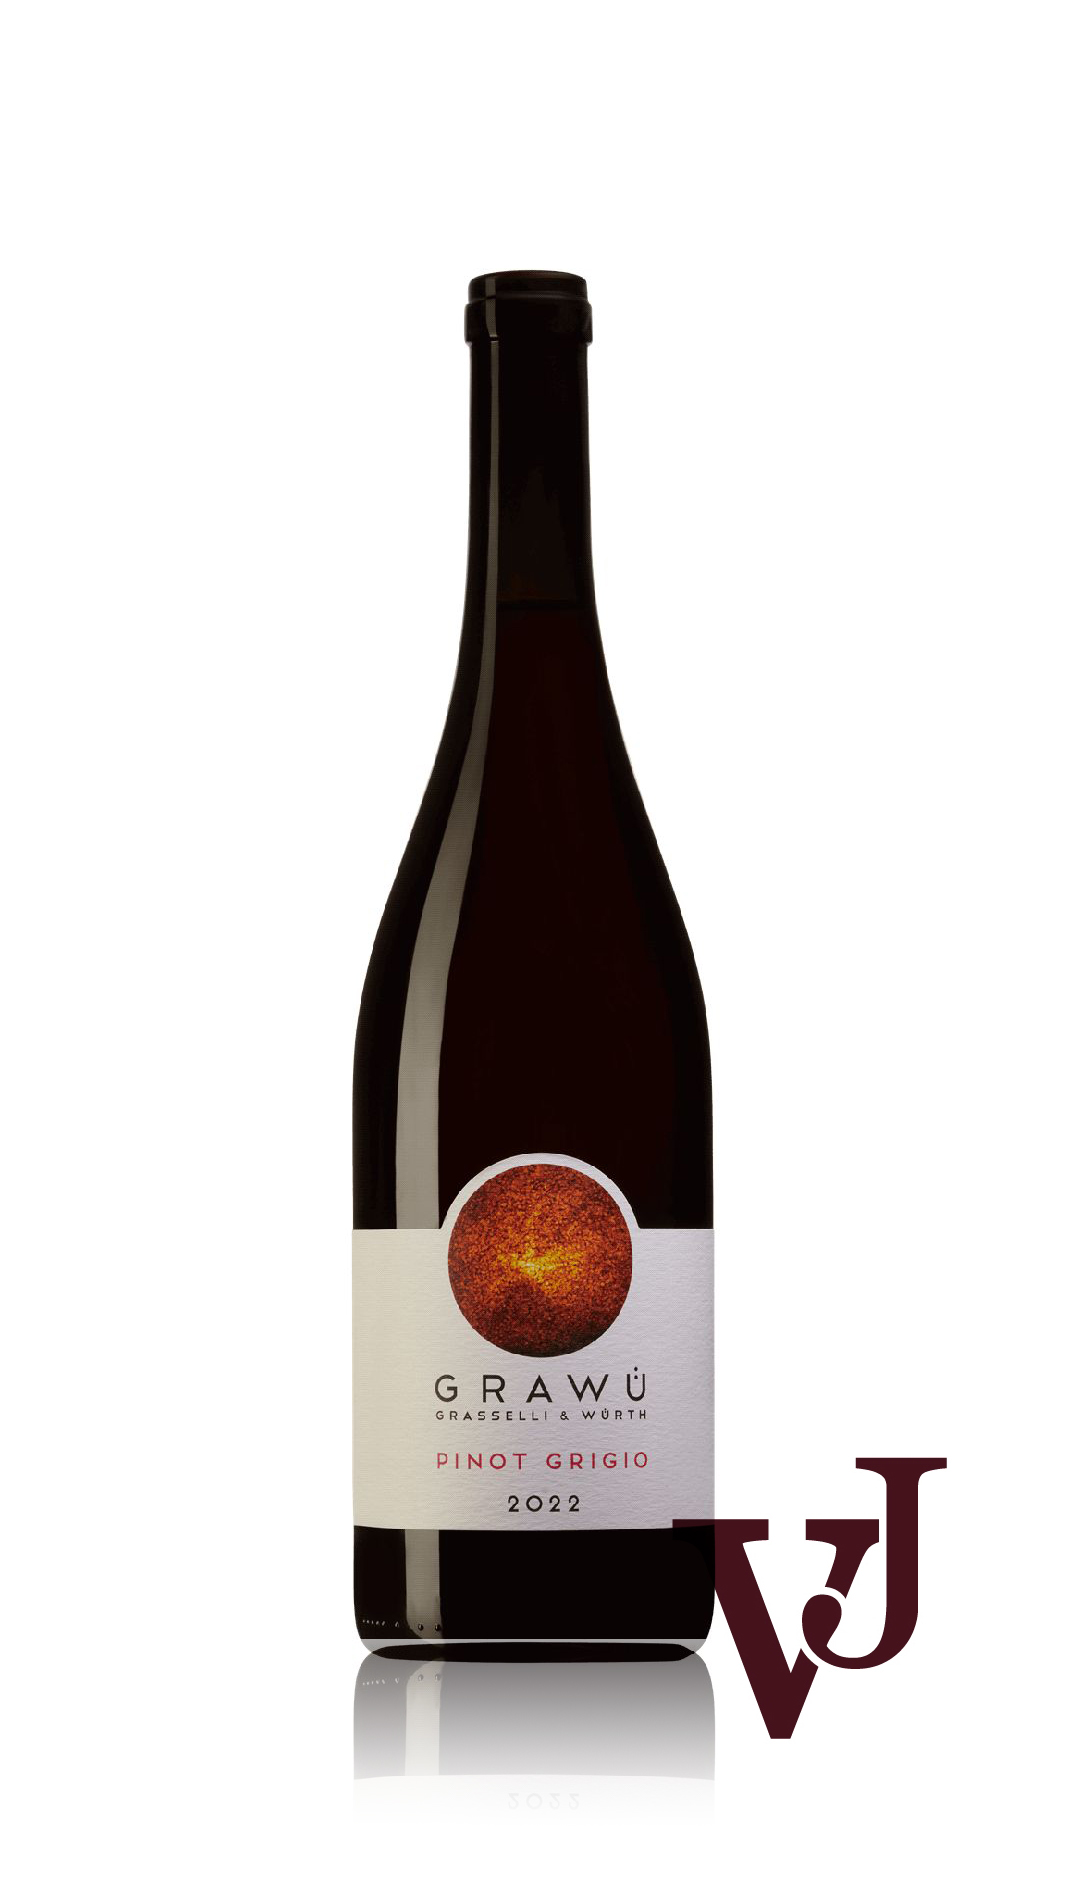 Vitt Vin - Grawü Grasselli & Würth Pinot Grigio 2022 artikel nummer 9218801 från producenten Grawü Grasselli & Würth från området Italien